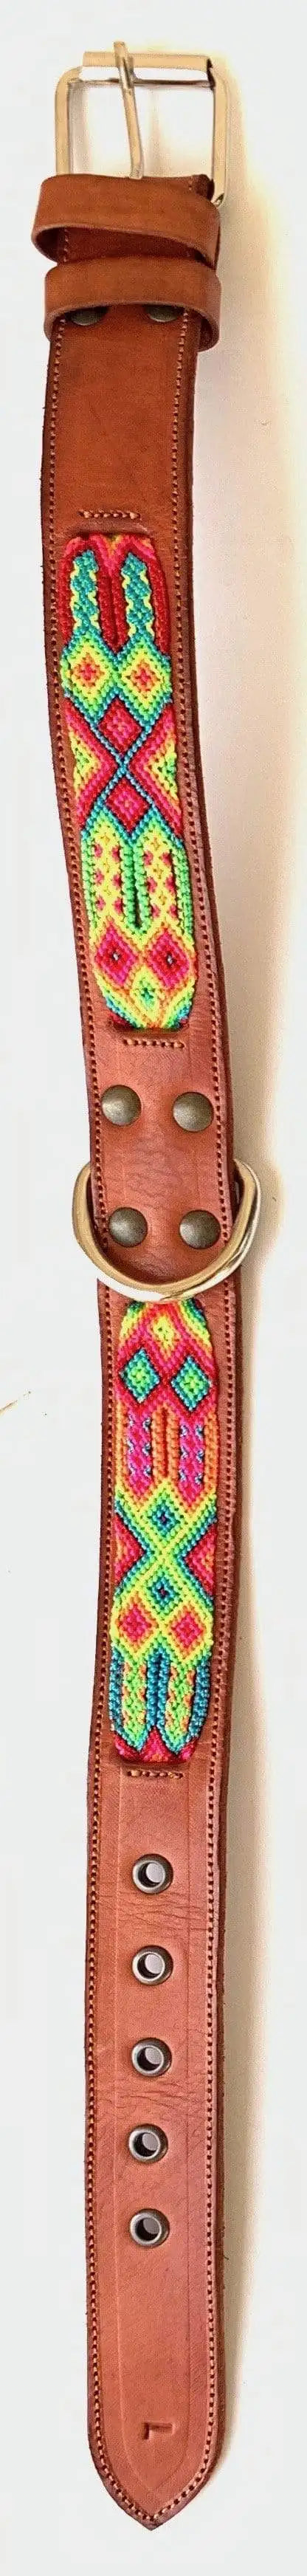 Double Detail Artisanal Handmade Dog Collars - 38